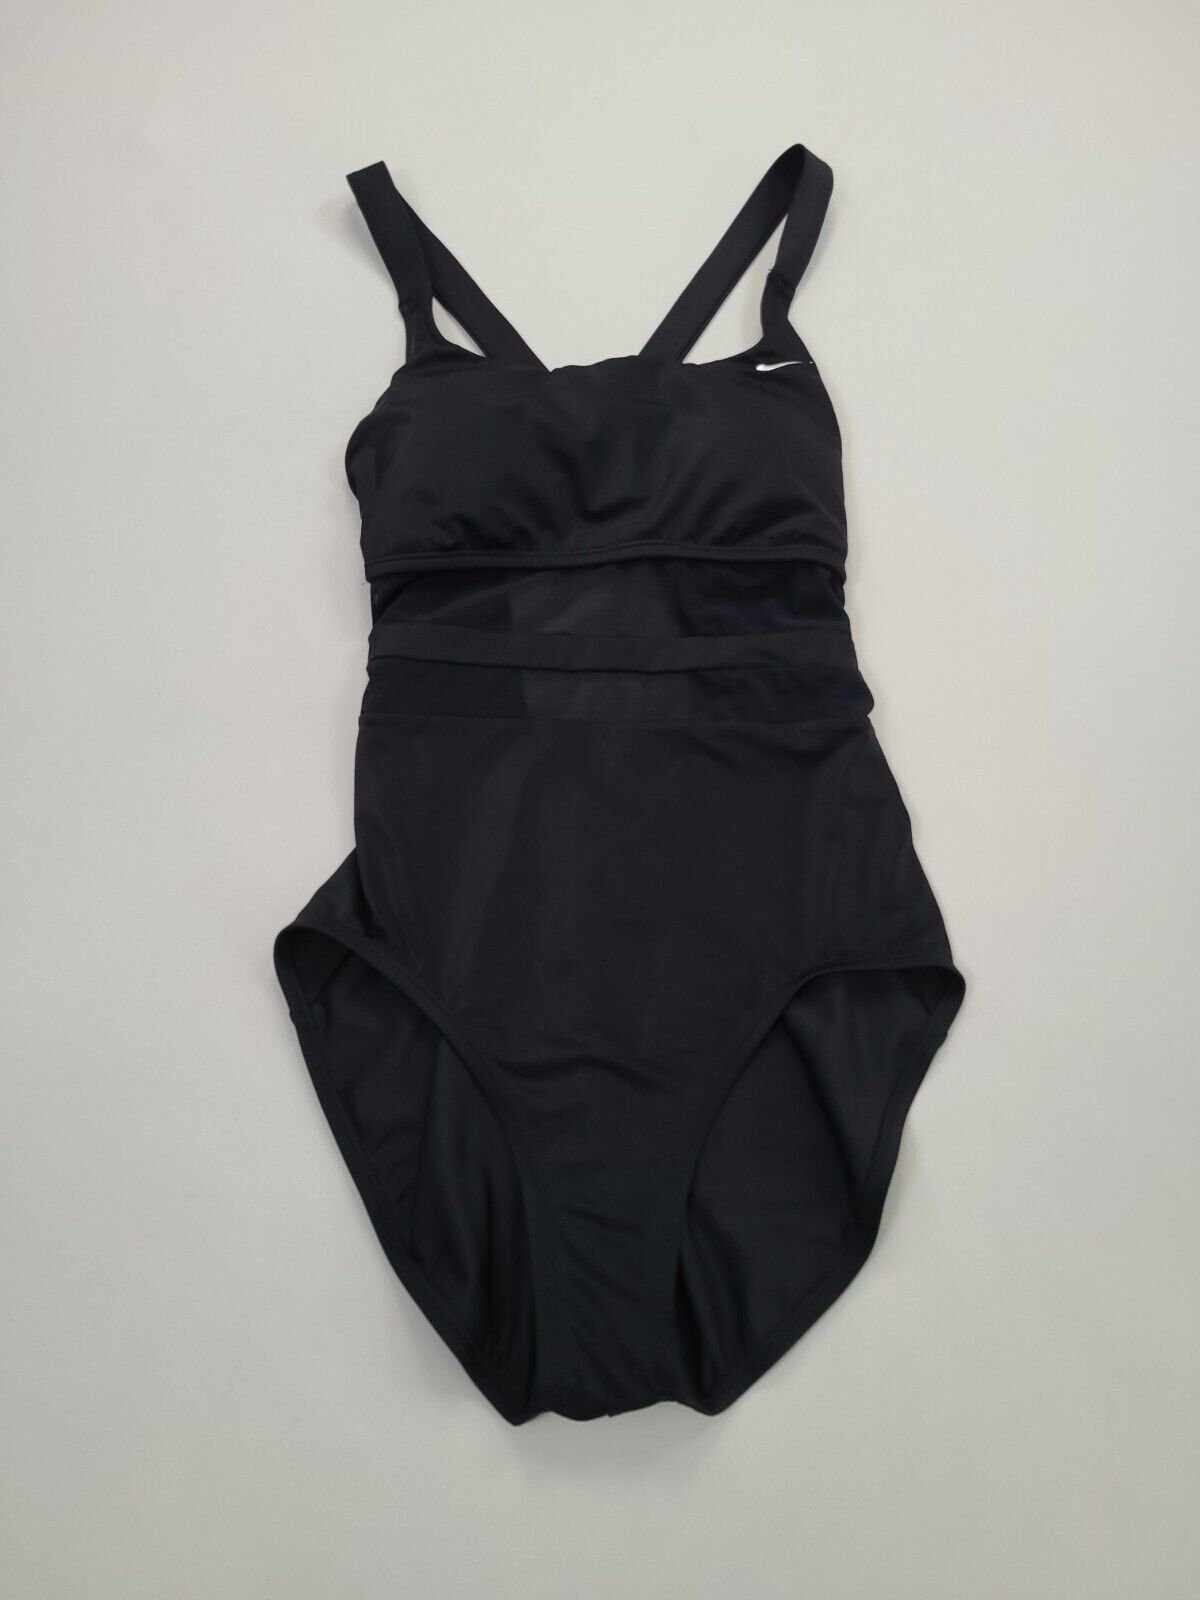 Nike Swim Suit Womens Large Black Bathing Suit Oc… - image 1